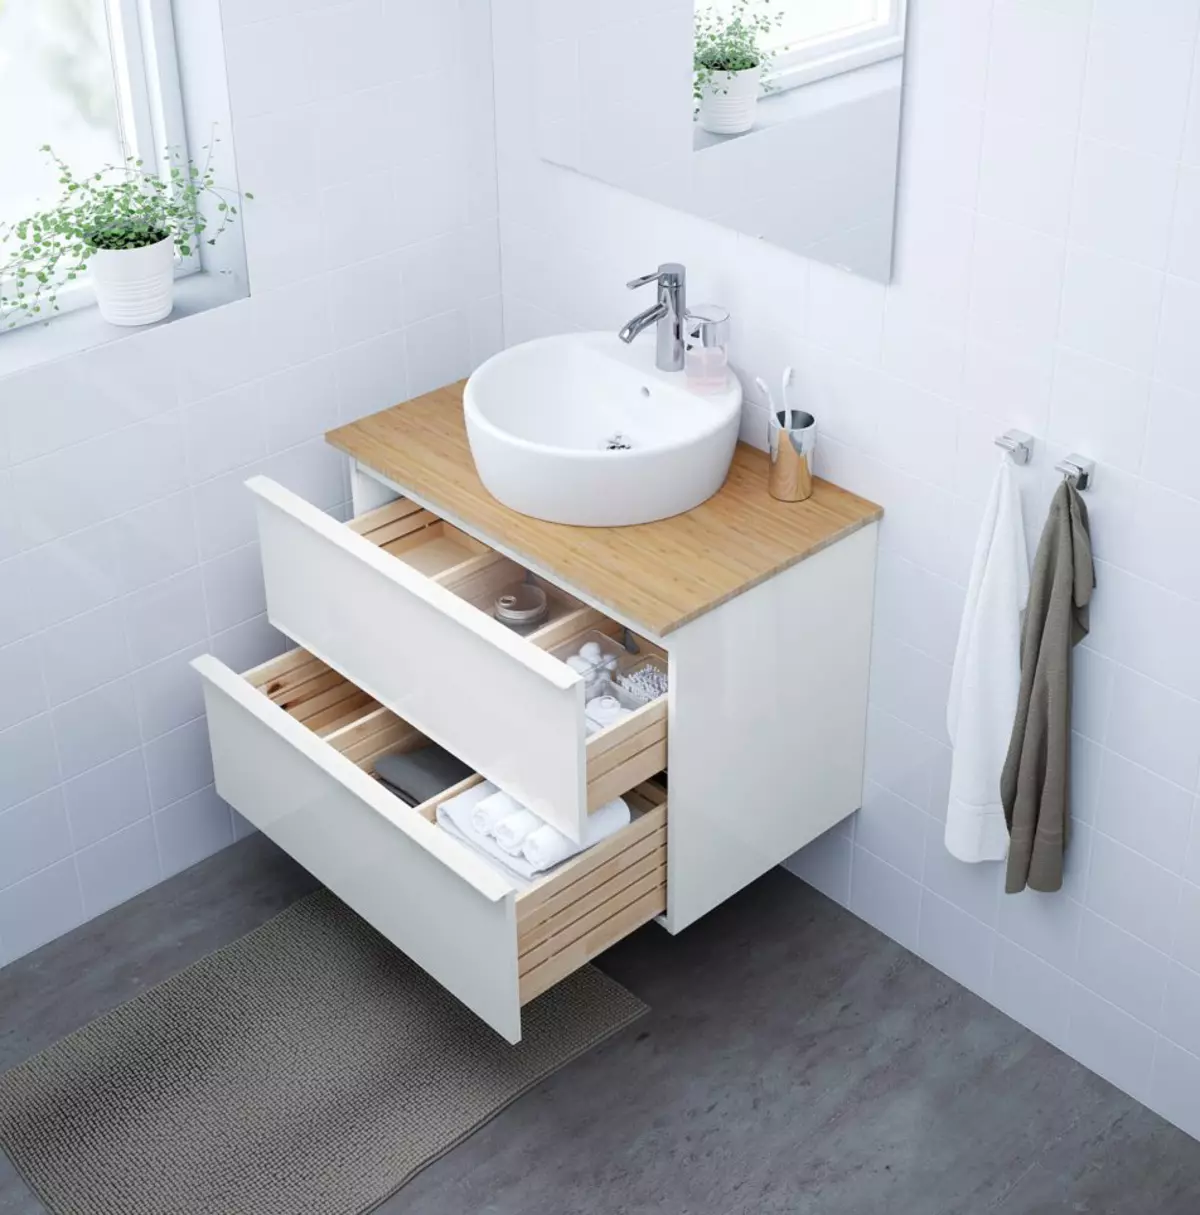 Soportes de baño: mesas de baño de variedades, descripción general de la marca IKEA y otros, soportes de madera y otros 10150_40